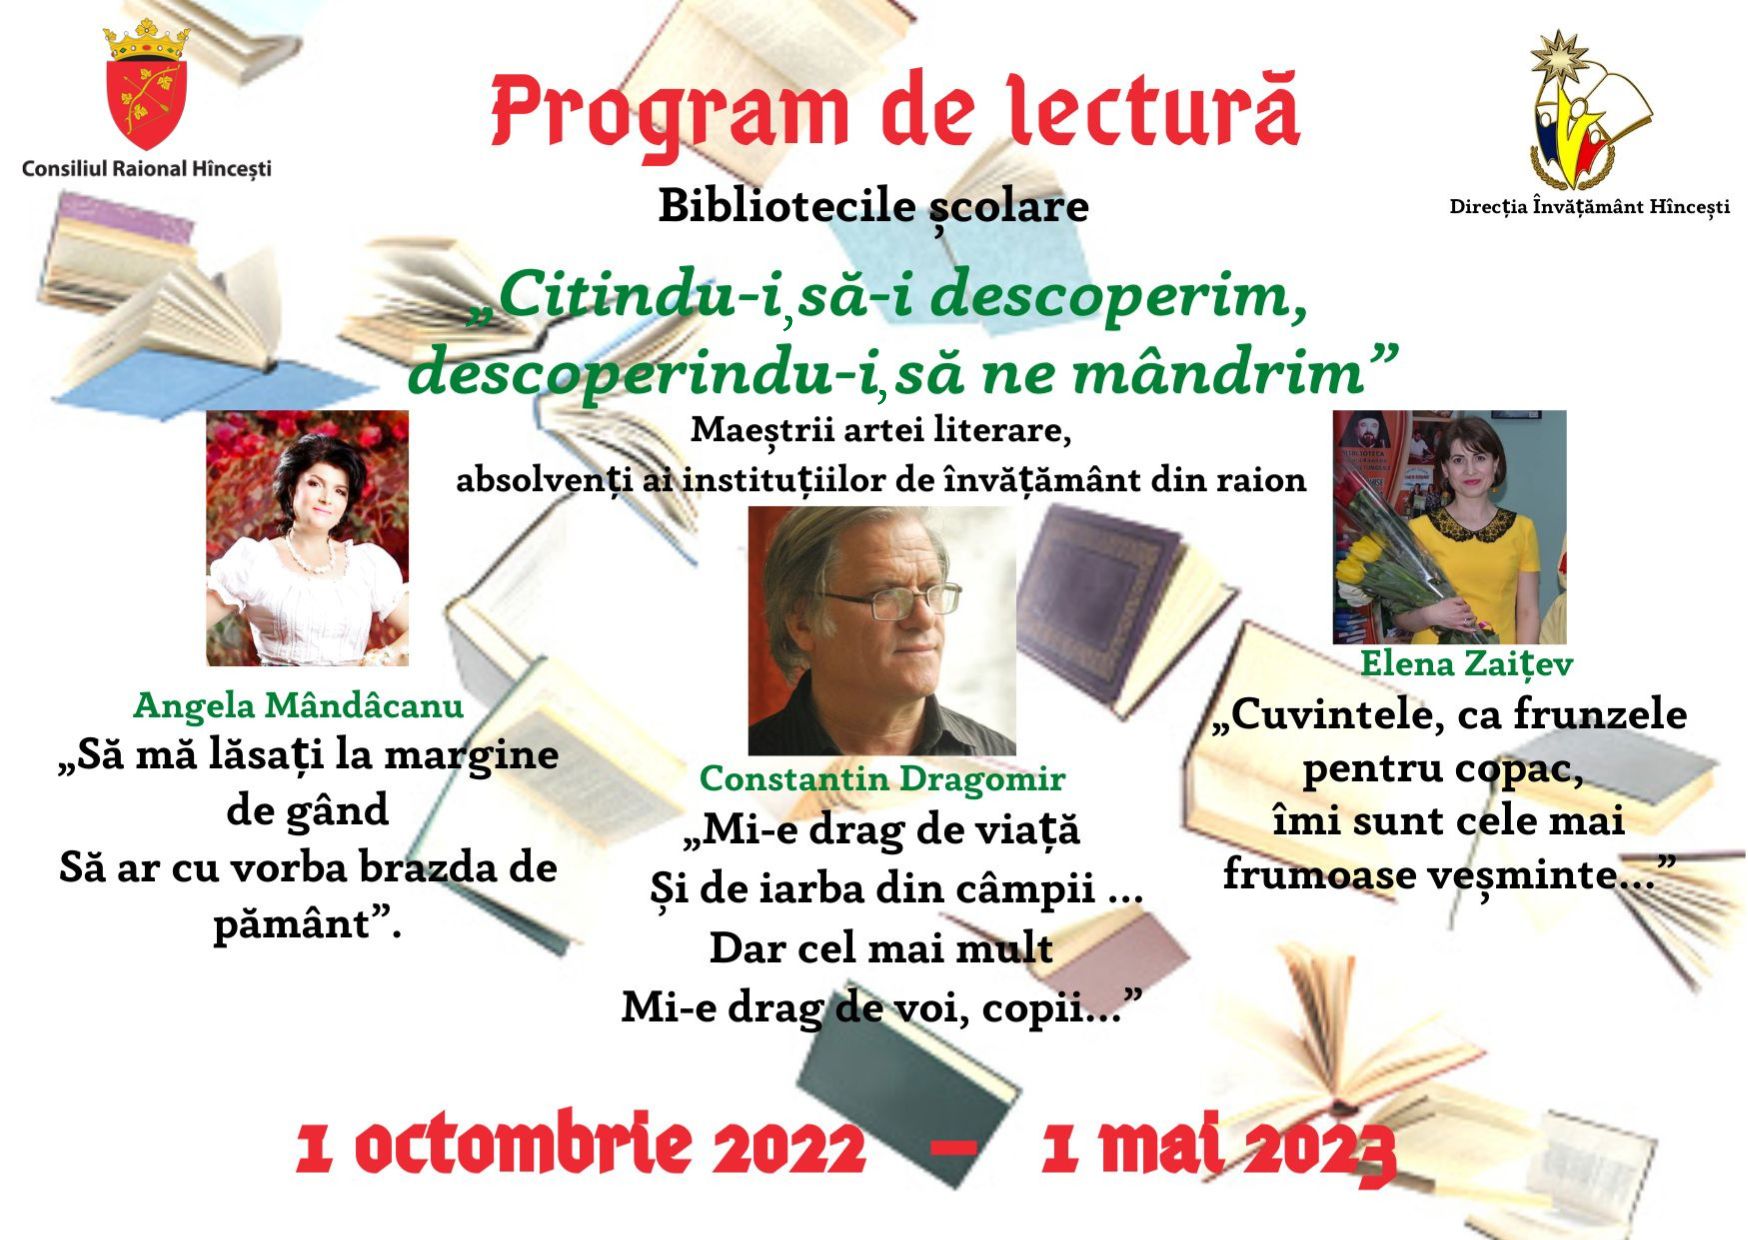 PROGRAM DE LECTURĂ, 01.10.2022-01.05.2023